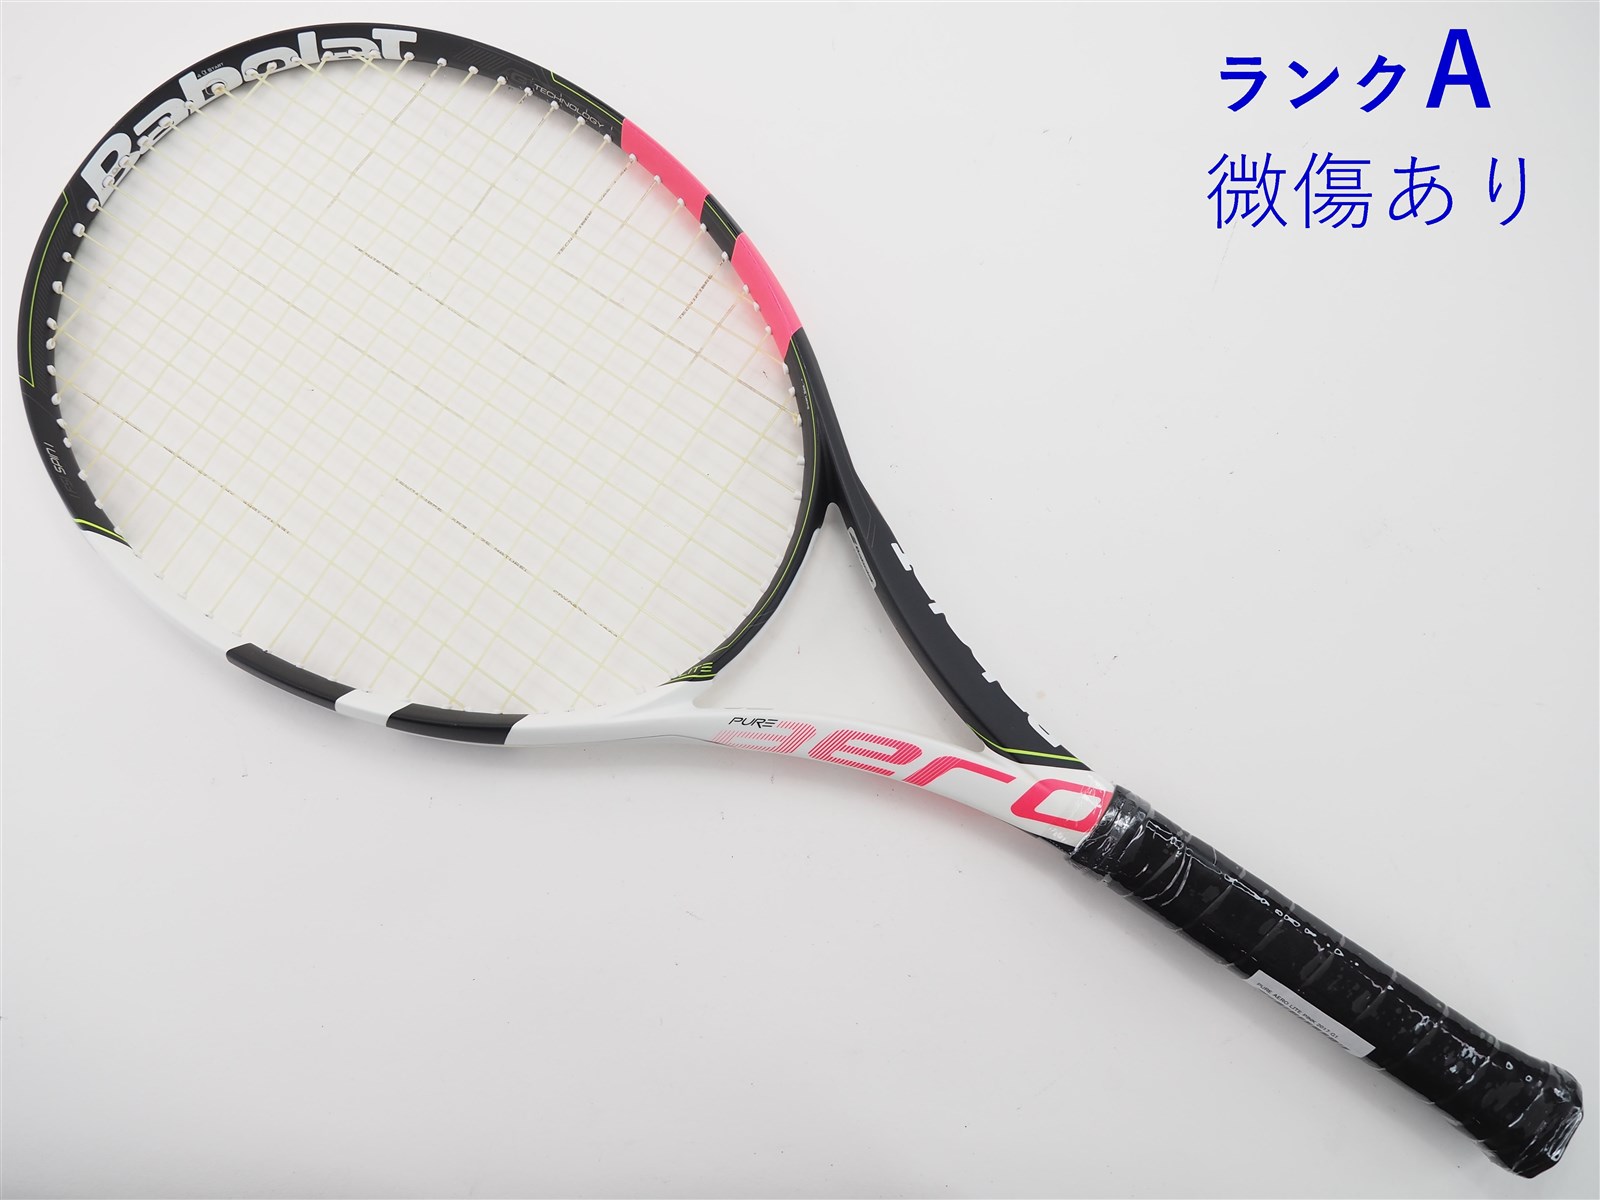 テニスラケット バボラ ピュア アエロ ライト ピンク 2017年モデル (G1